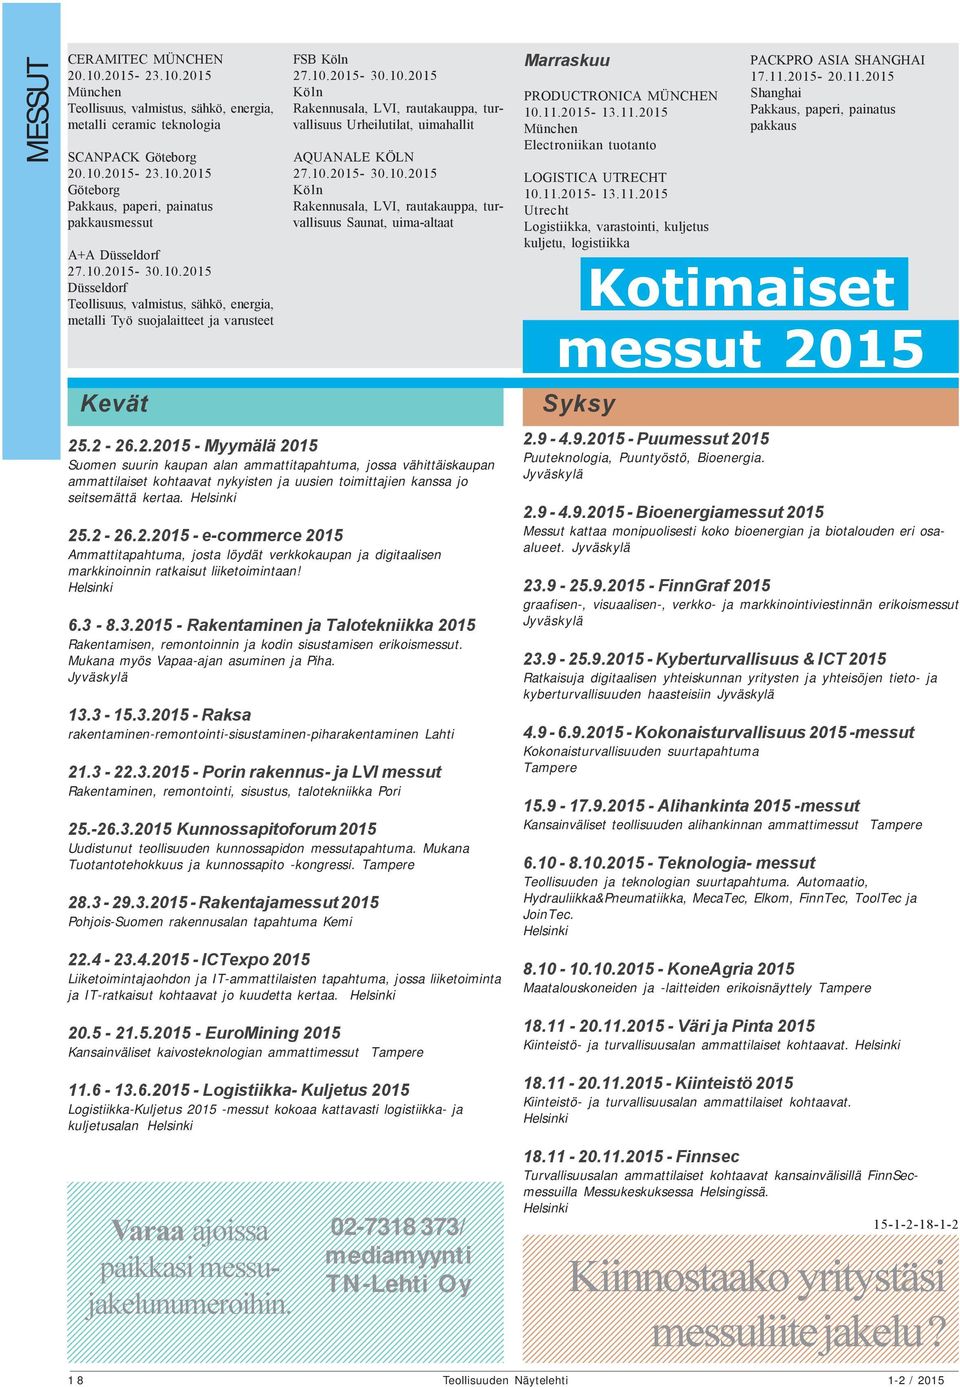 Helsinki 25.2-26.2.2015 - e-commerce 2015 Ammattitapahtuma, josta löydät verkkokaupan ja digitaalisen markkinoinnin ratkaisut liiketoimintaan! Helsinki 6.3-